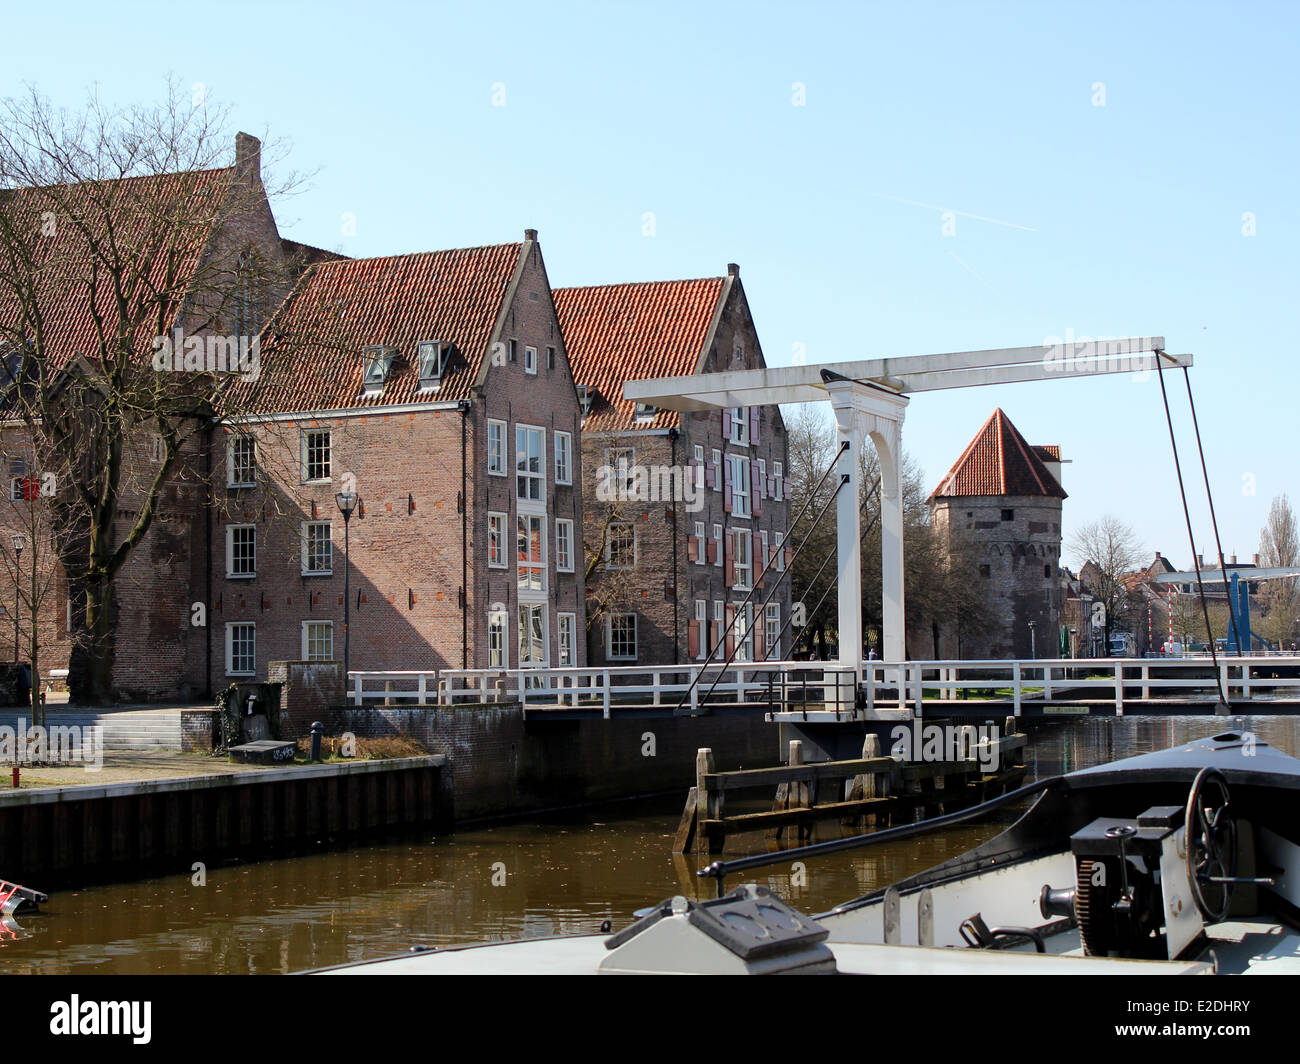 Hölzerne Zugbrücke, Wälle & Altstadt Wand in Zwolle, Niederlande am Thorbeckegracht / Thorbecke canal. Stockfoto